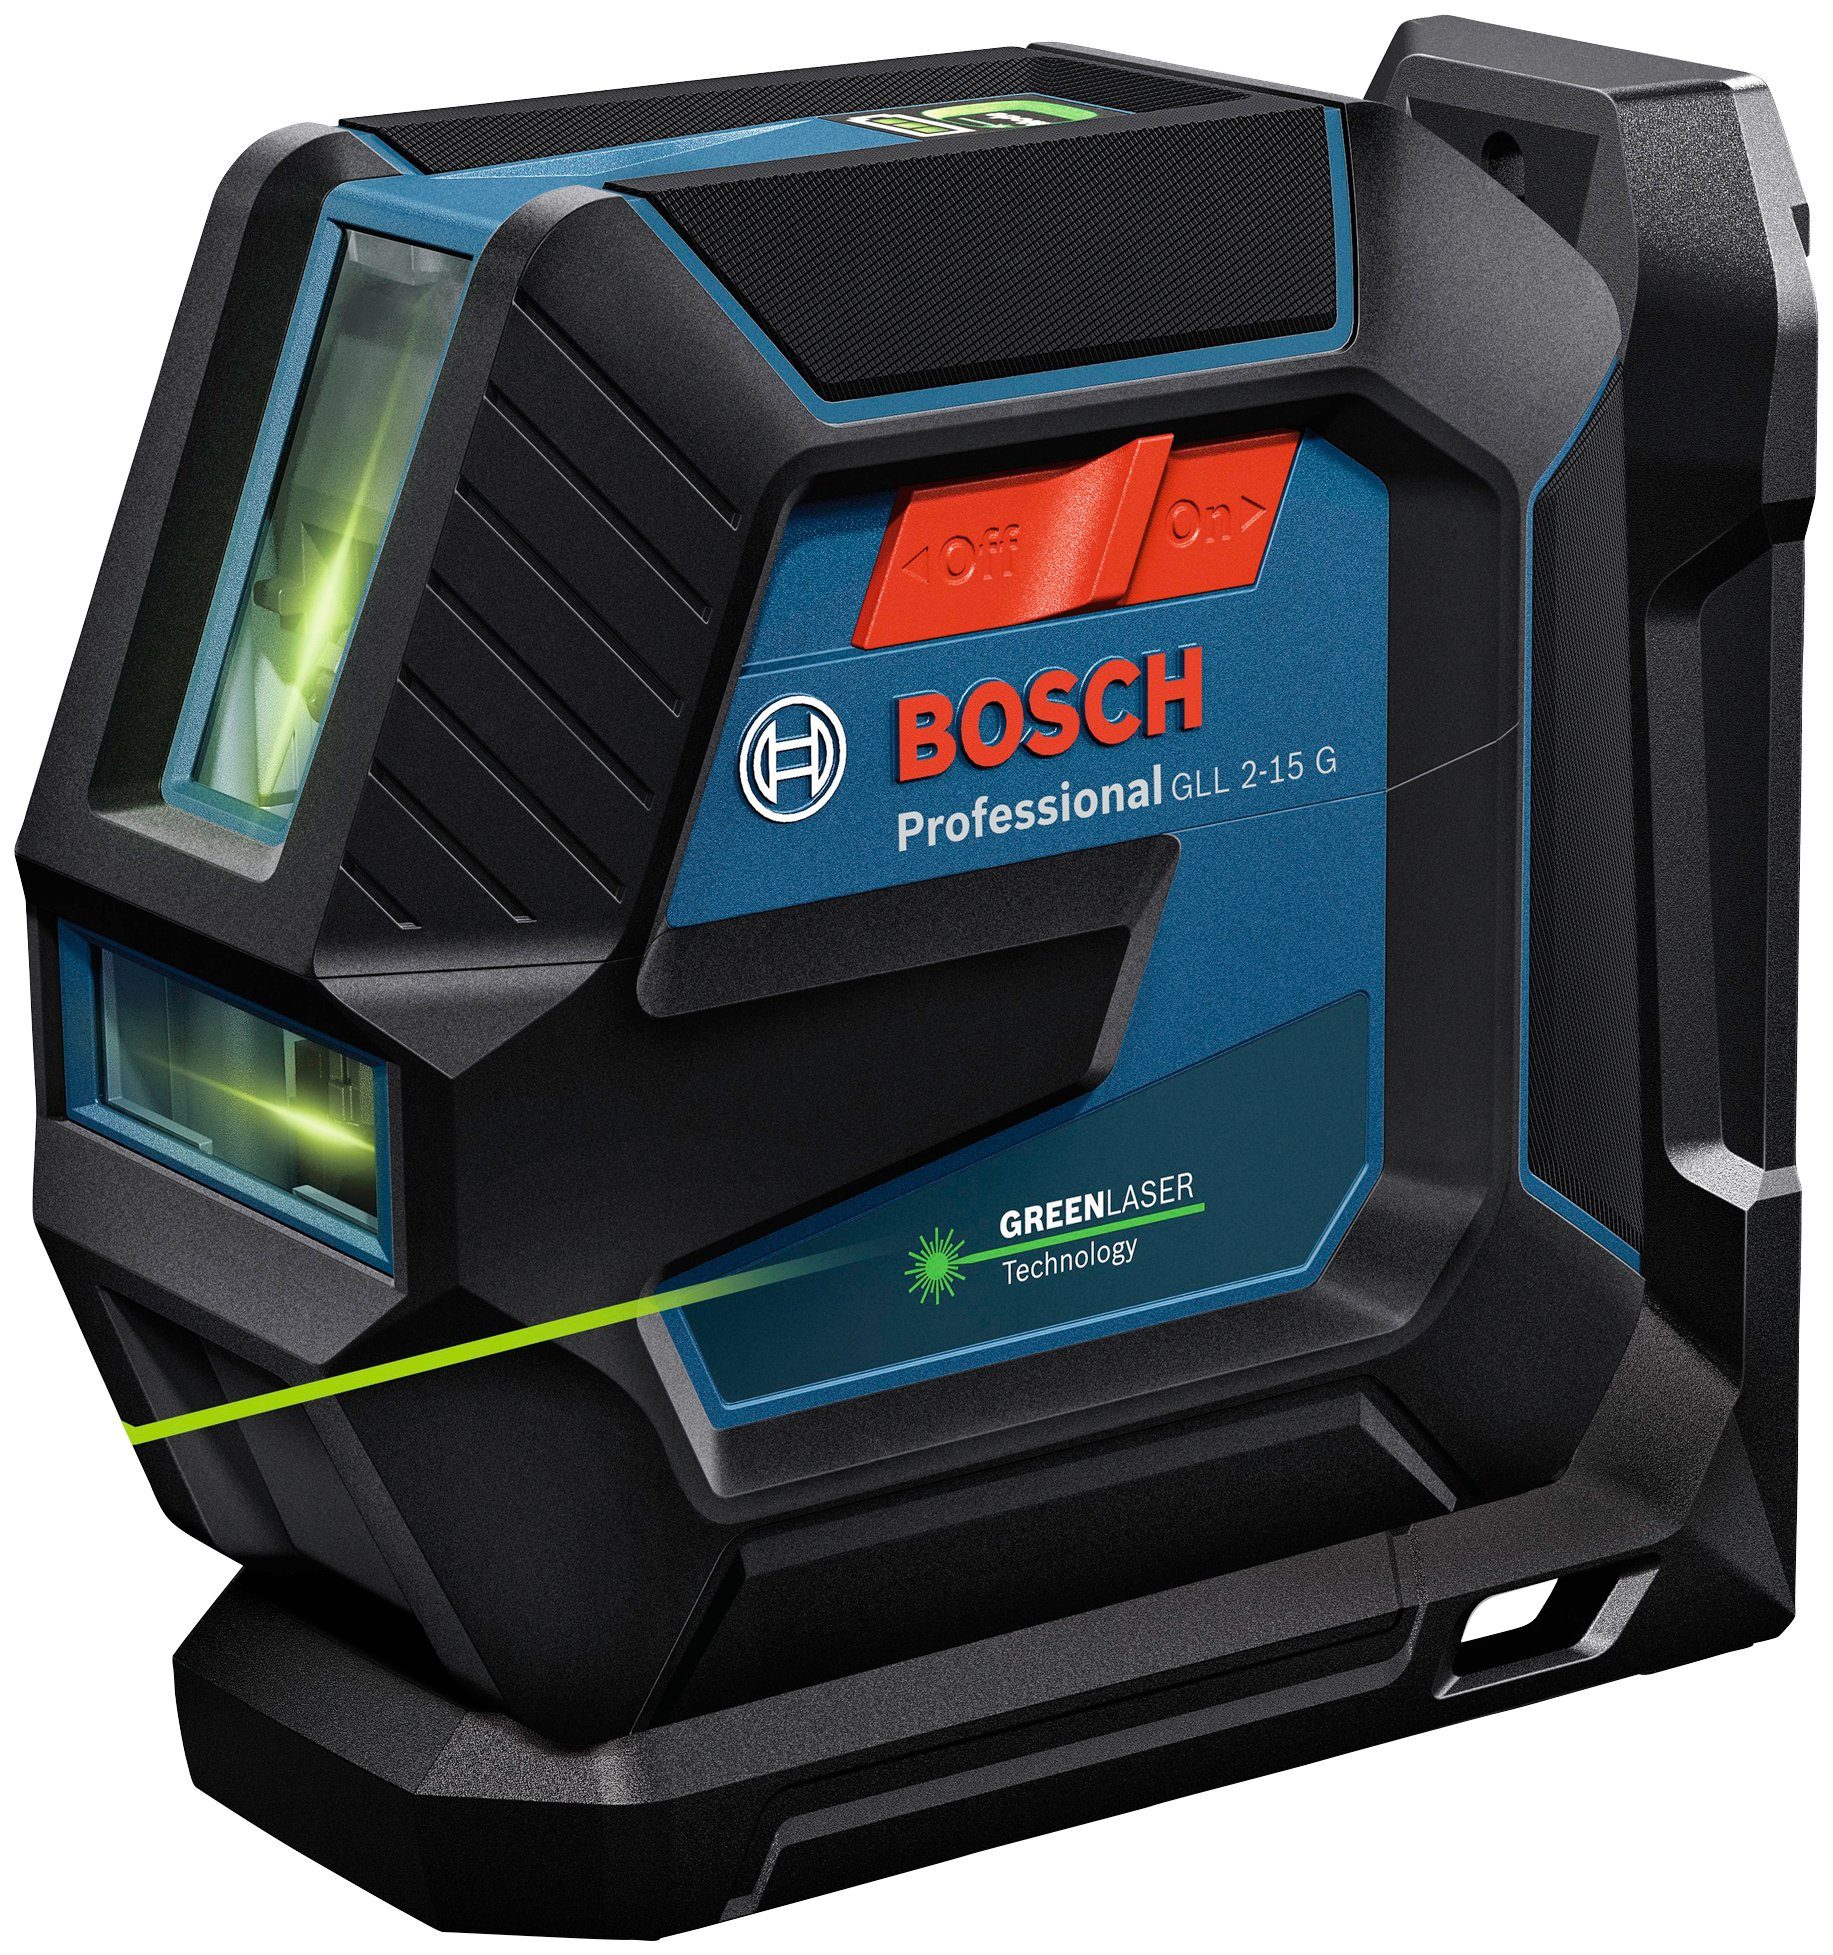 Bosch Professional Linienlaser Spritzwasserschutz Professional, 2-15 G GLL Staub- und IP64